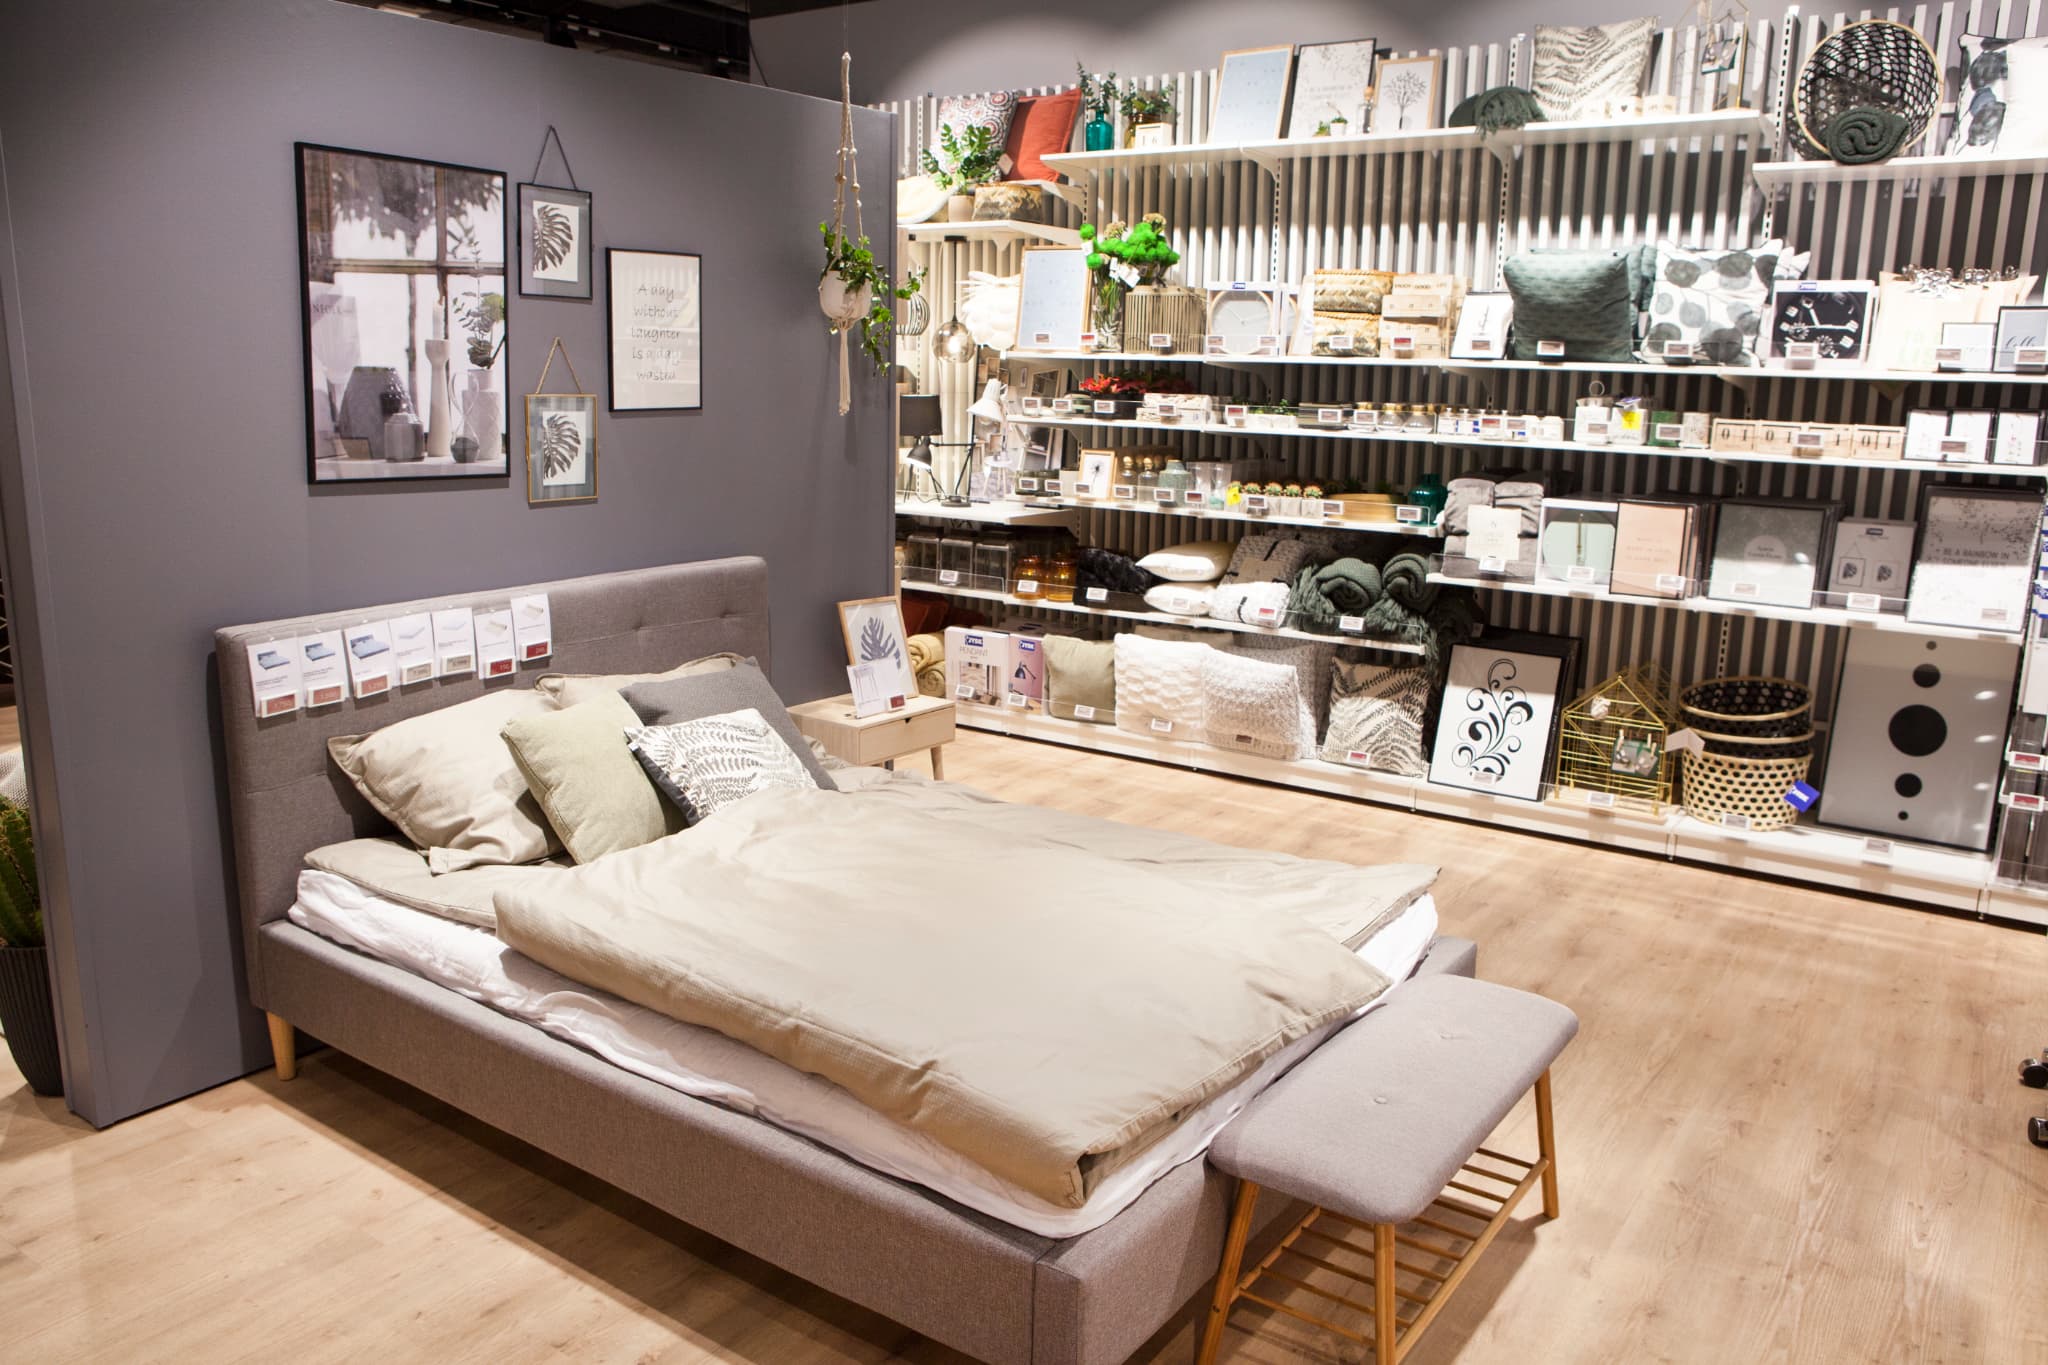 Des lits, de la déco, du bois clair... Le style Jysk rappelle celui de son concurrent Ikea. 